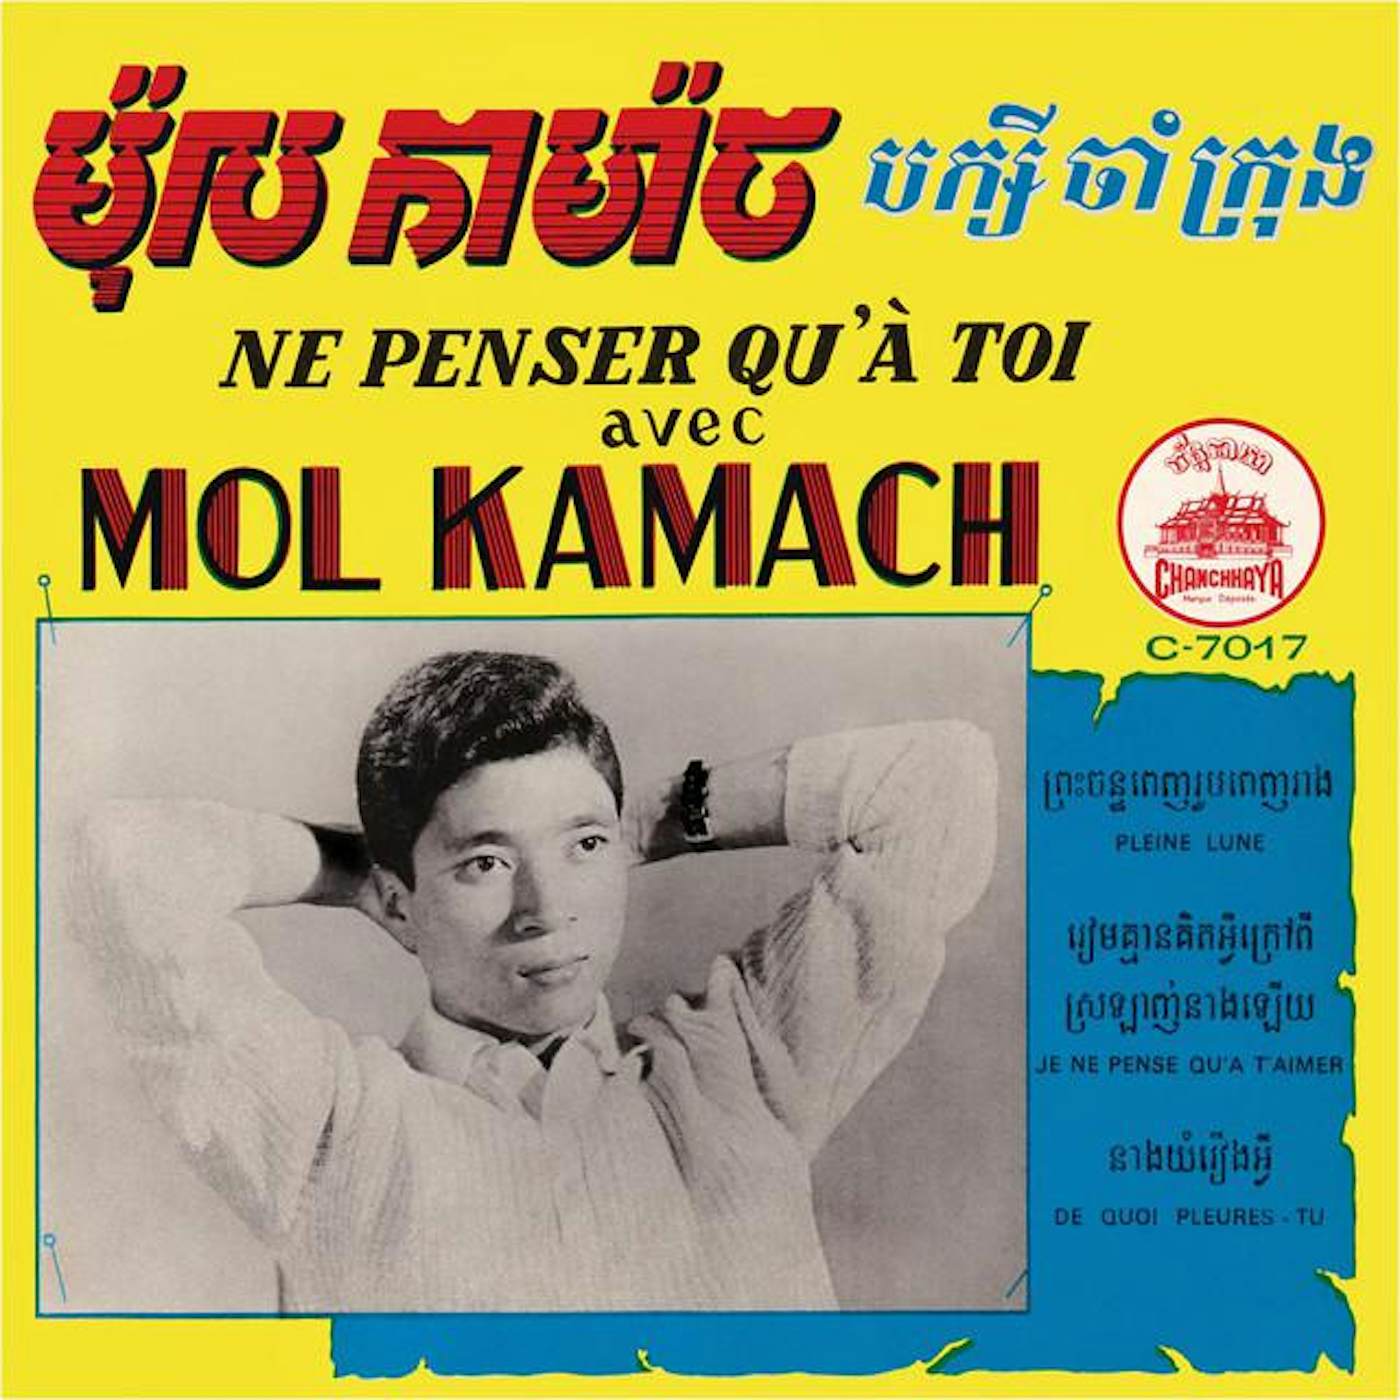 Mol Kamach